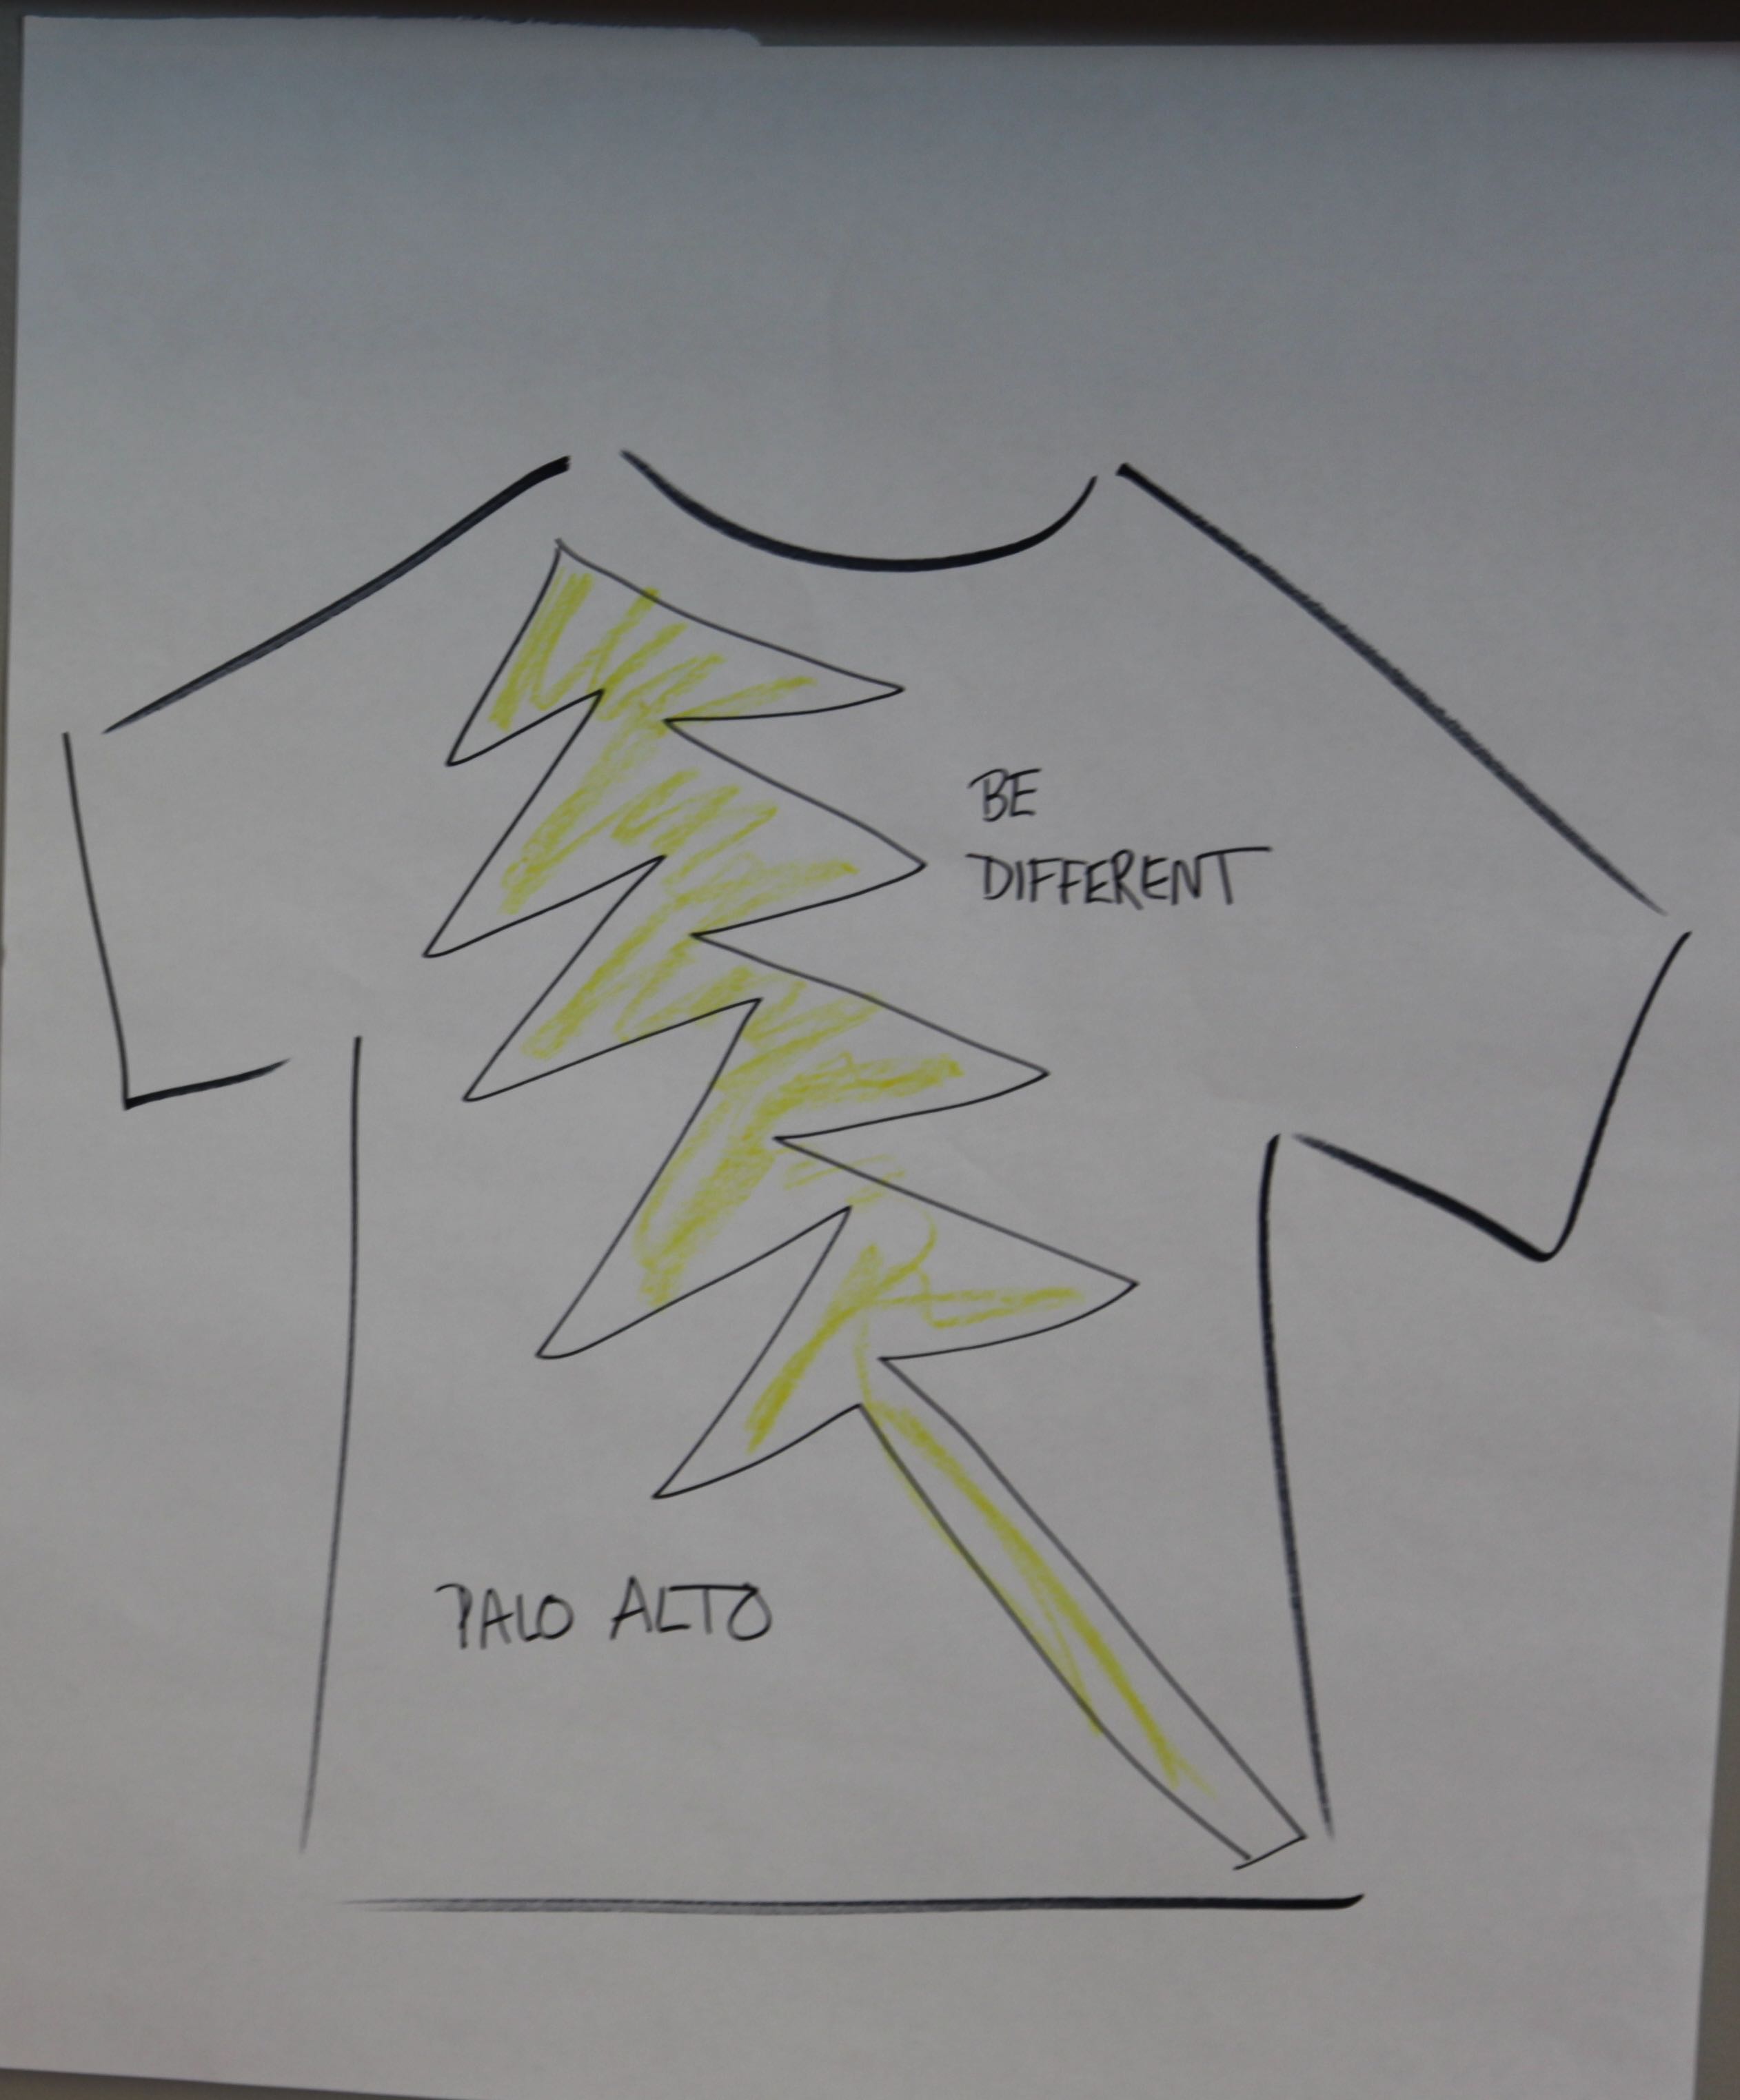 Participants created tshirts that reflect what makes Palo Alto unique. 